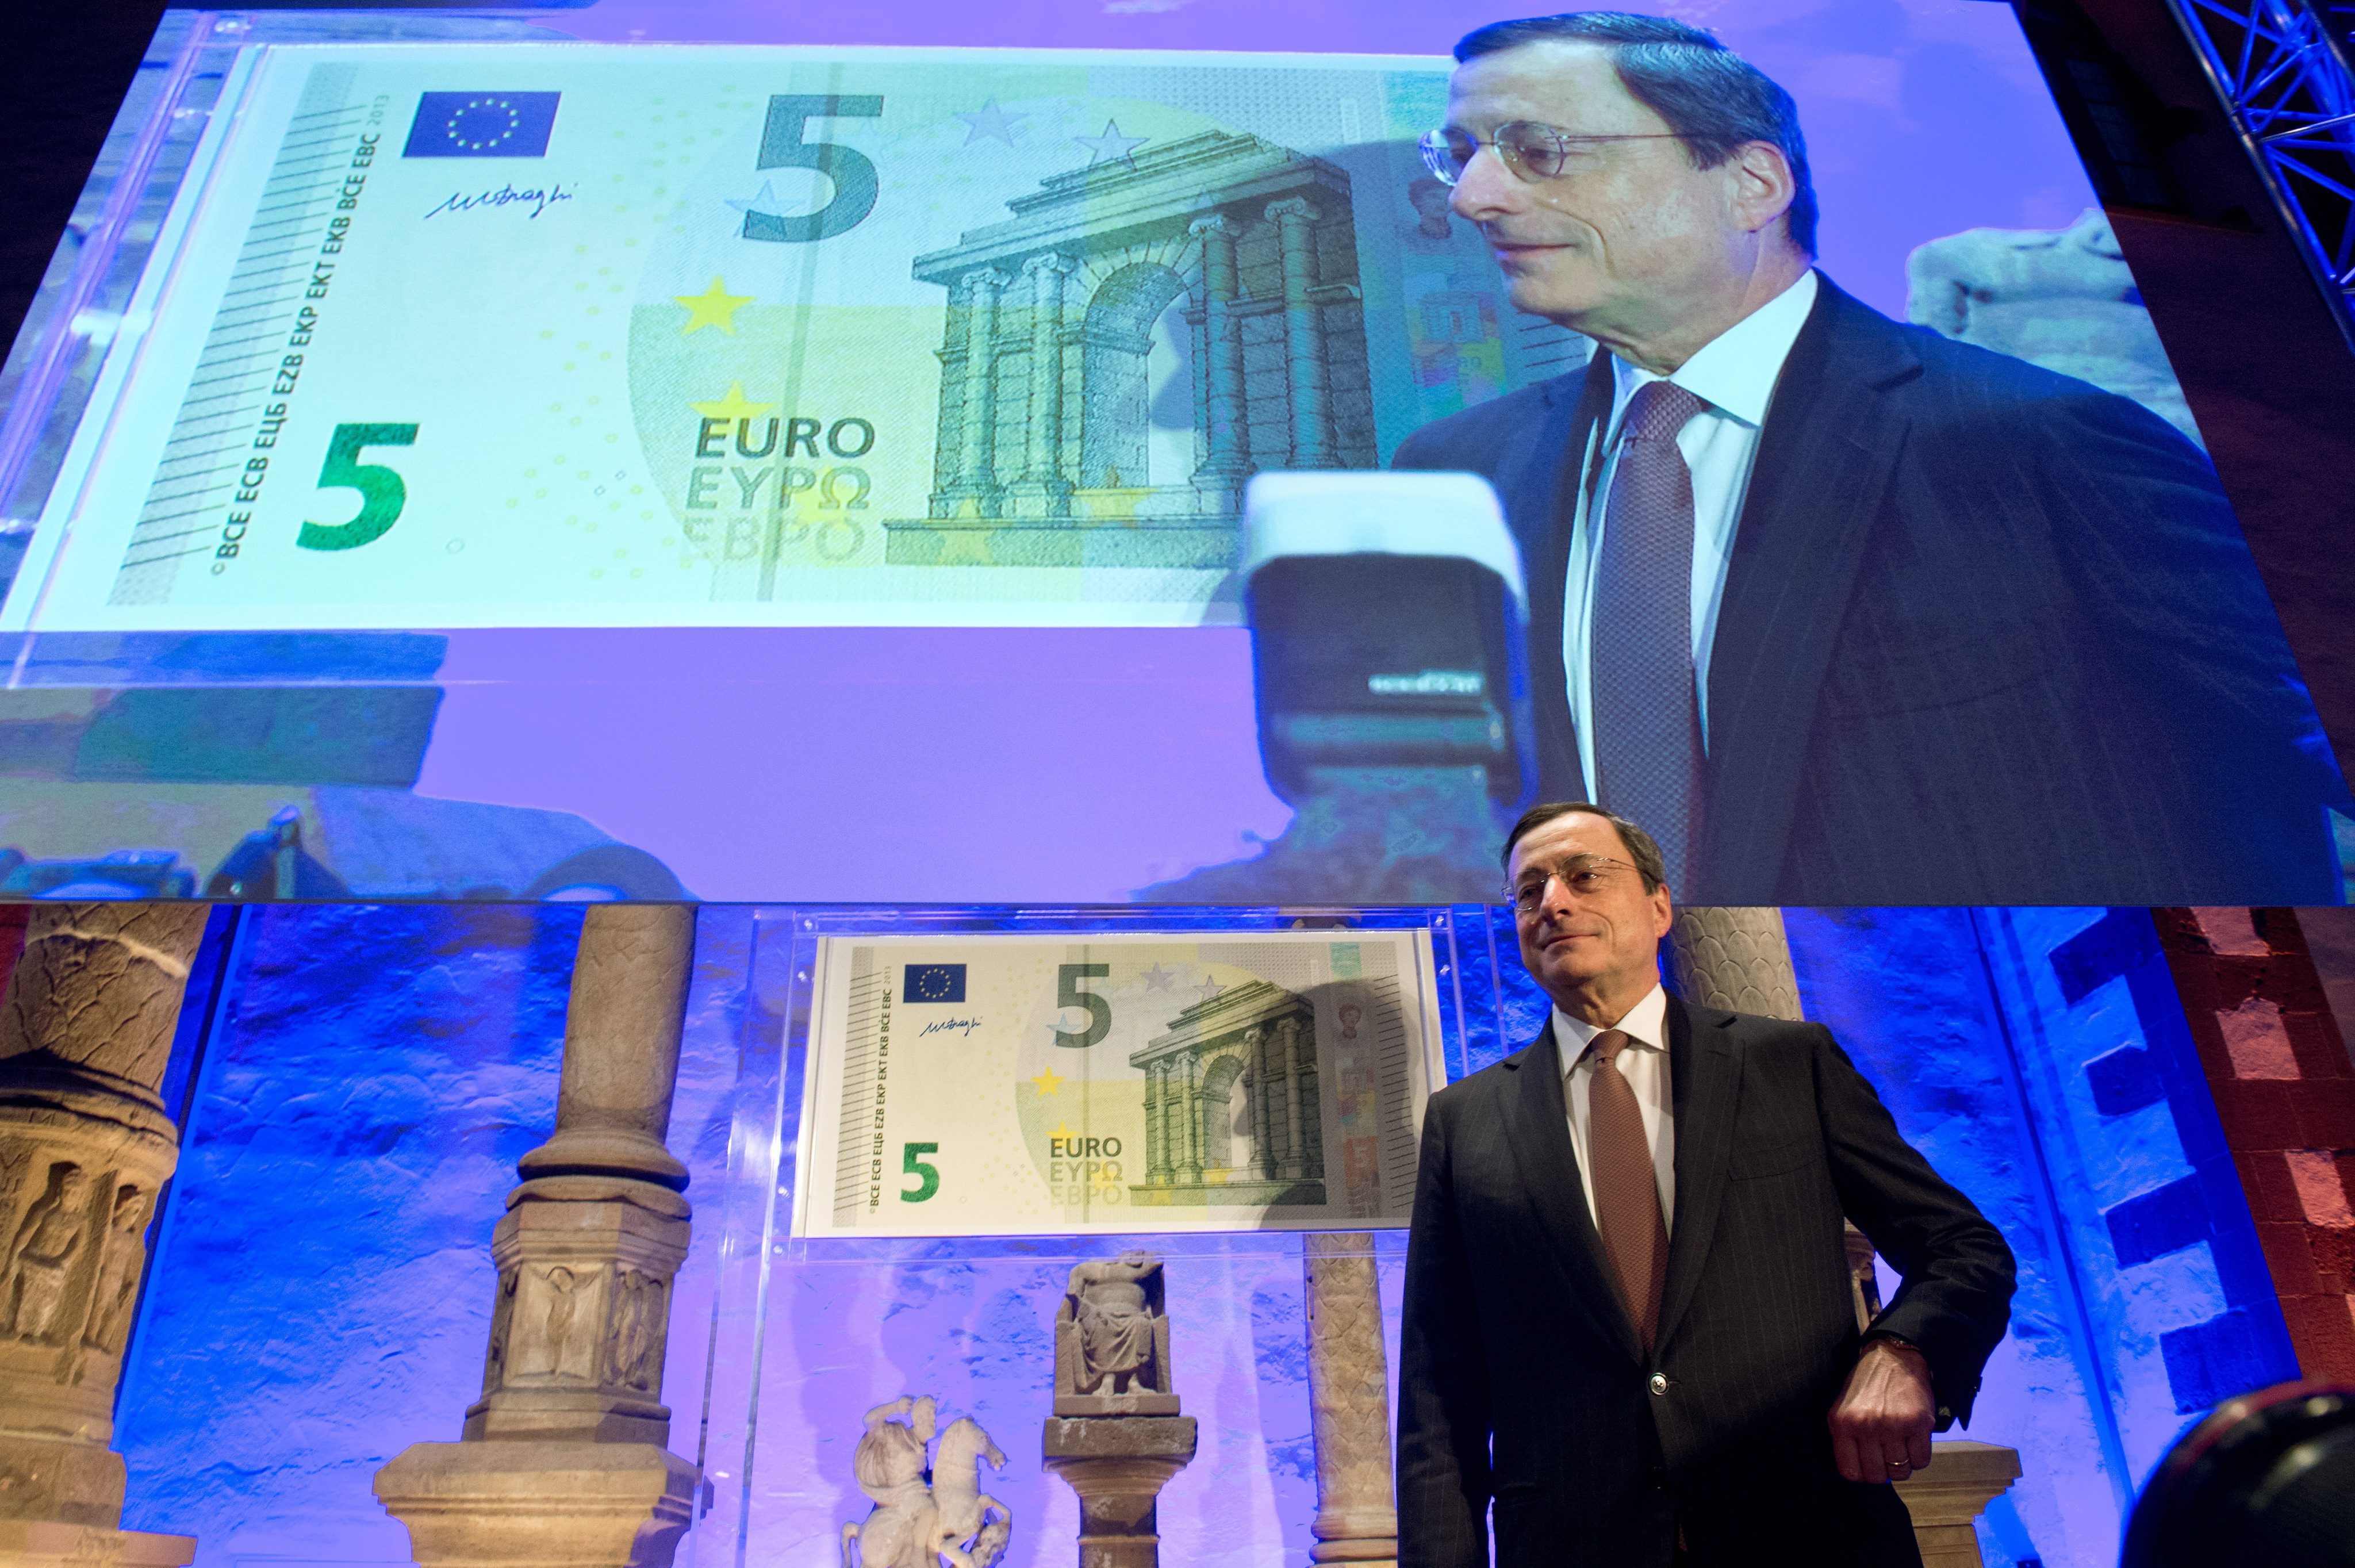 Νέο χαρτονόμισμα των 5 ευρώ κυκλοφορεί από σήμερα σε όλη την Ευρώπη